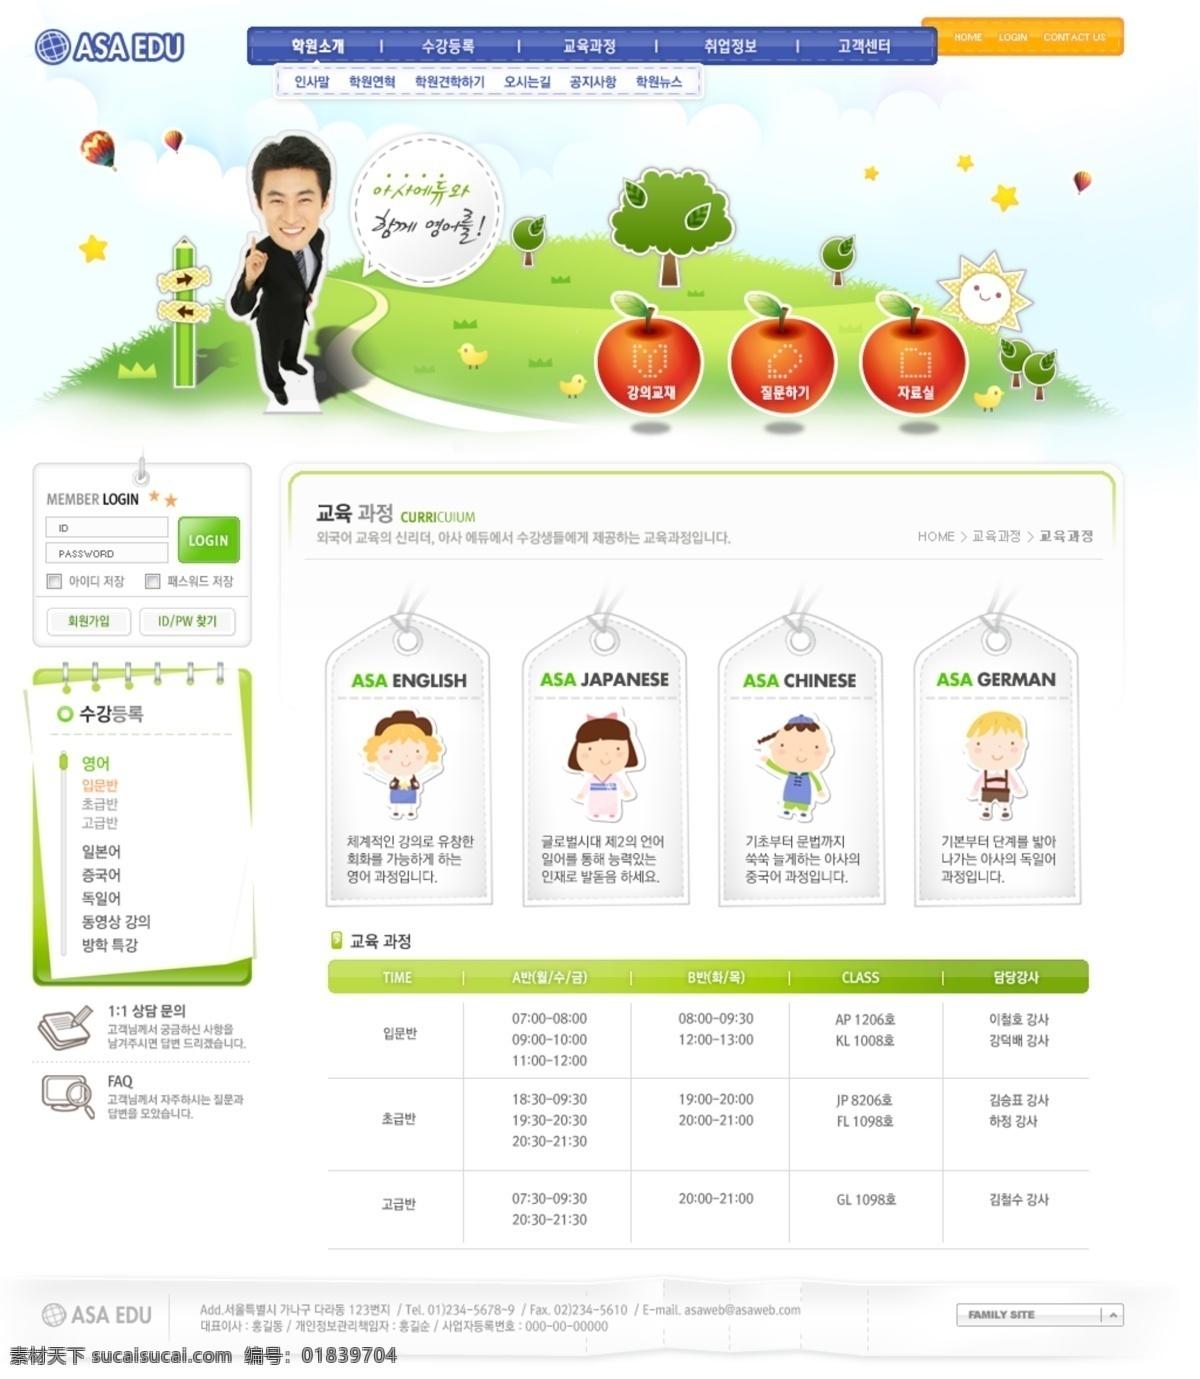 韩国 人物 创意设计 网页模板 网页素材